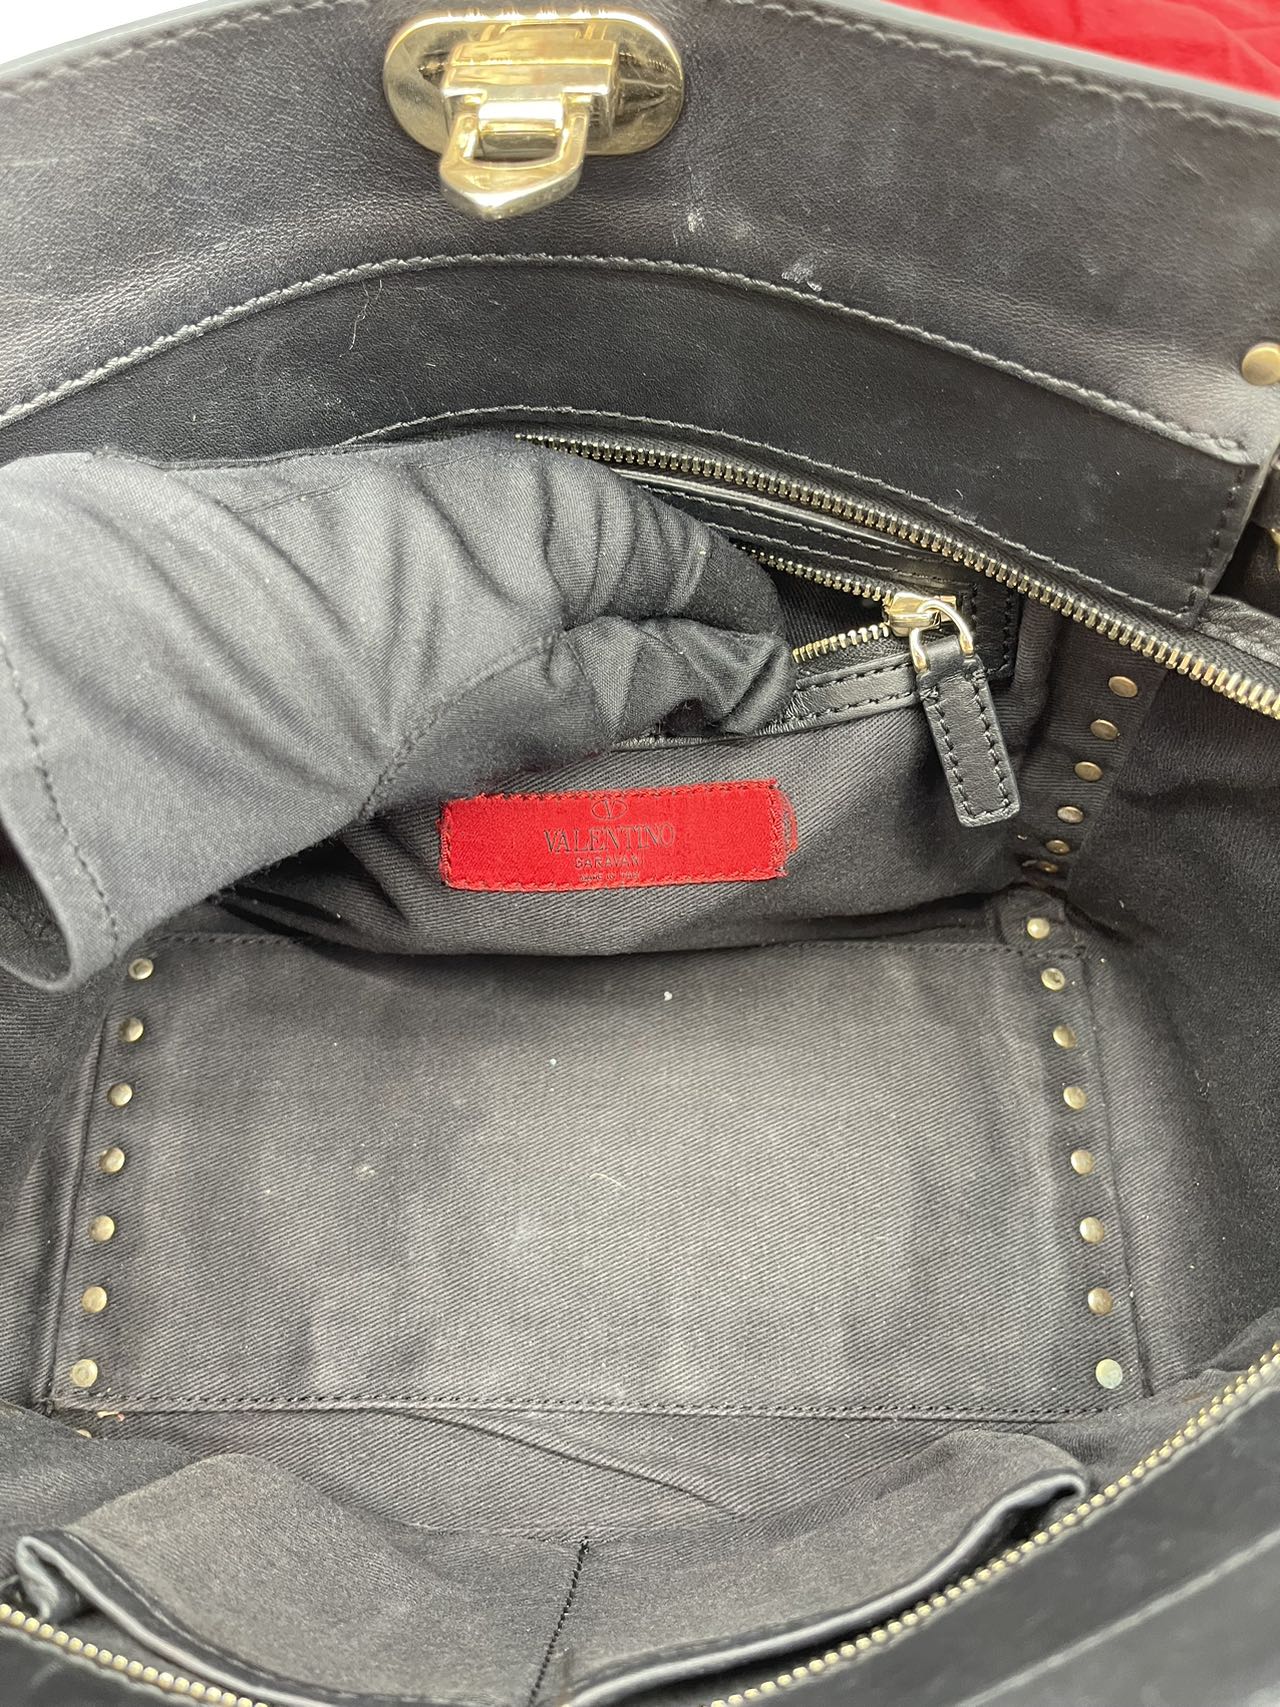 Valentino Black Leather RockStud Shoulder Bag